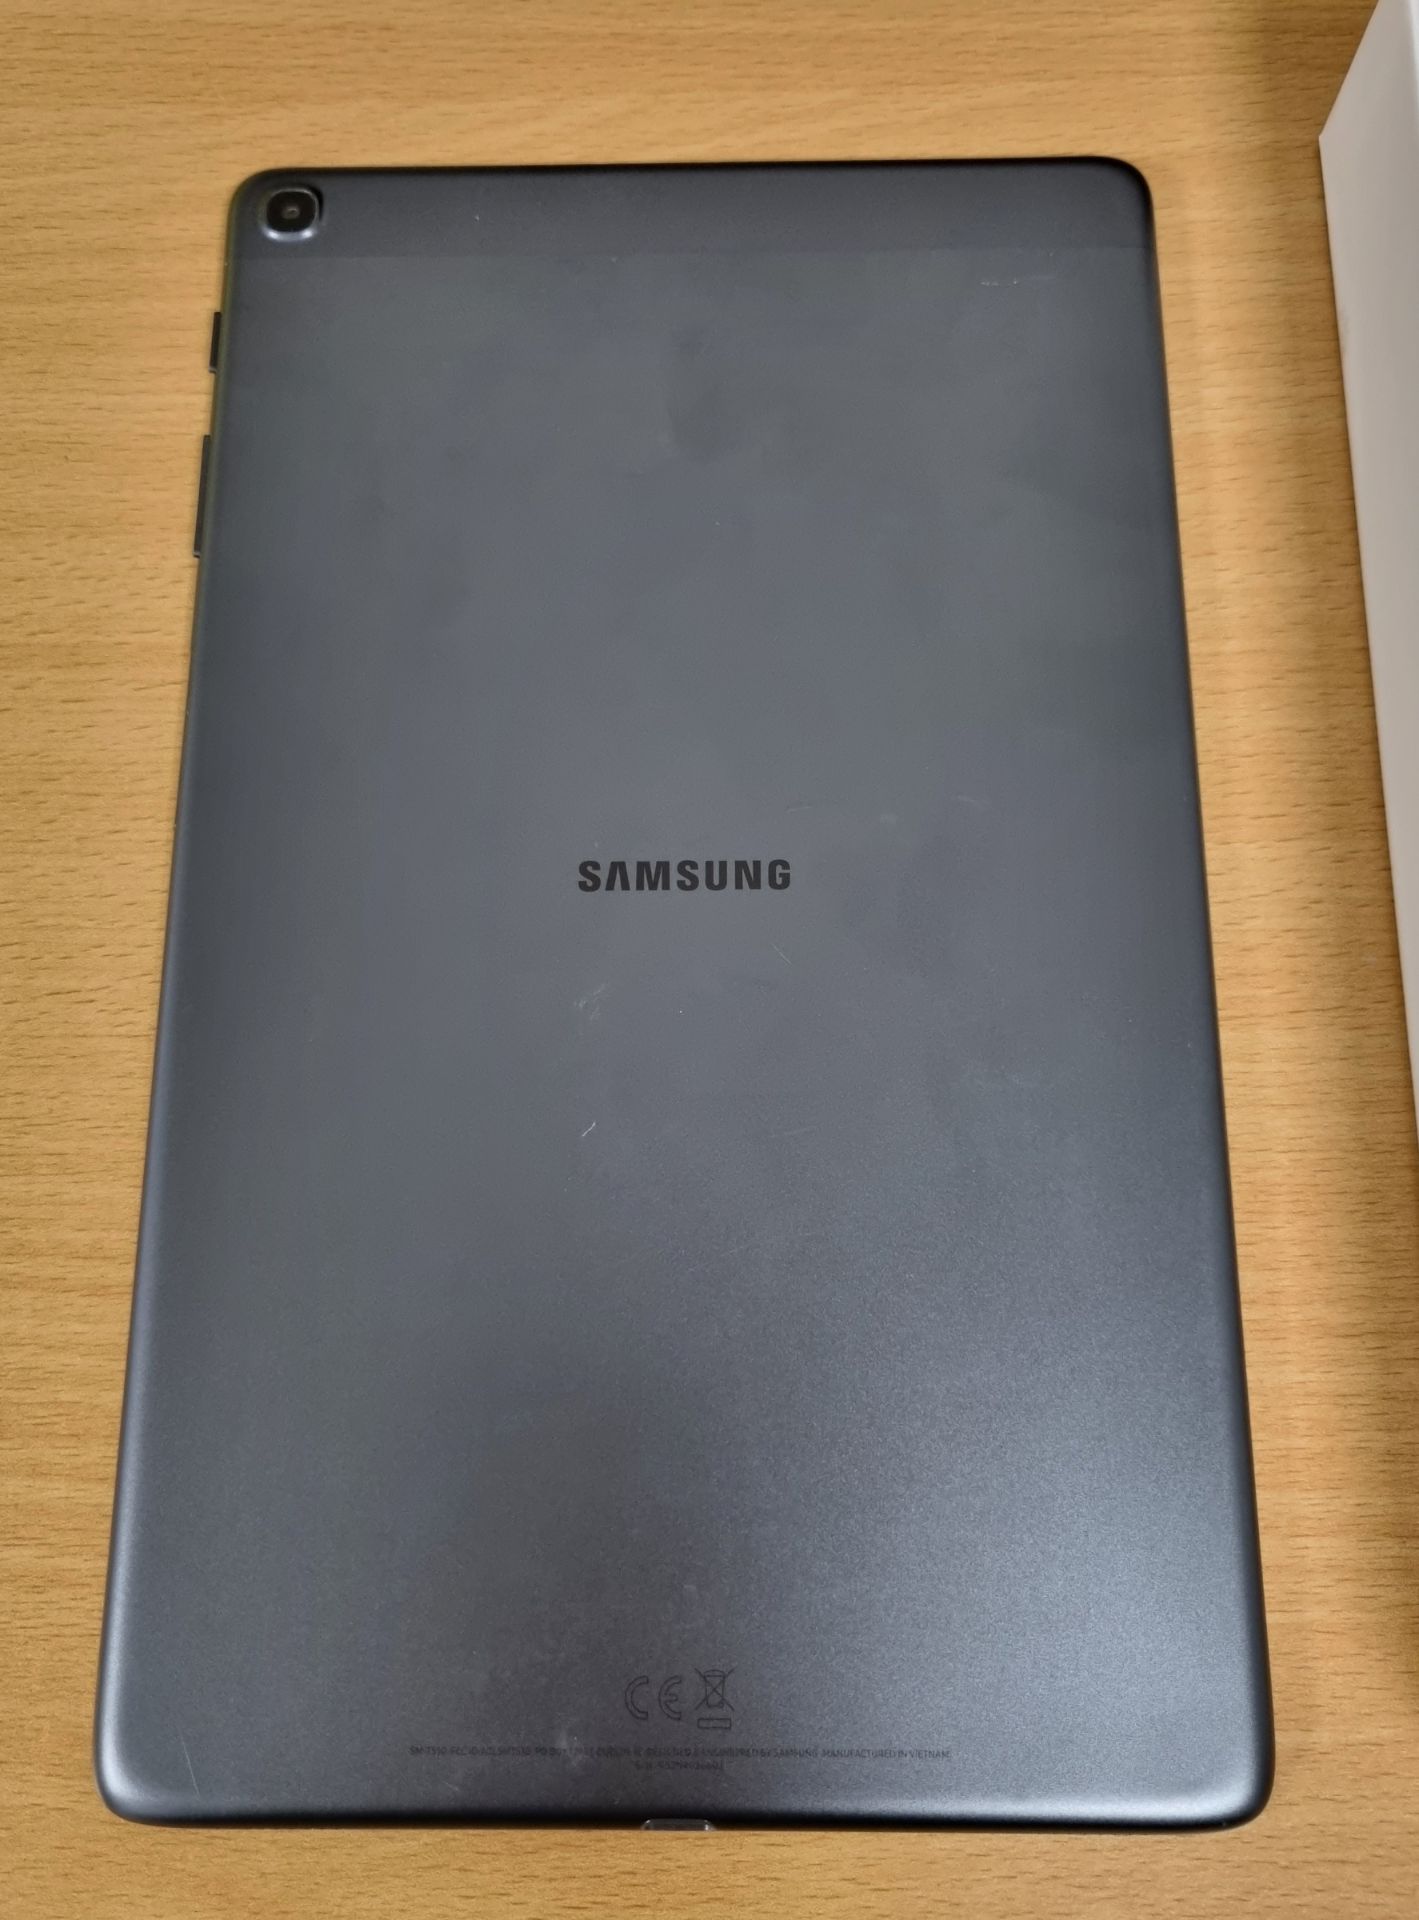 Samsung Galaxy Tab A SM-T510, 10.1 inch Tablet, Wifi, 32GB, 2GB RAM, 8MP AF + 5MP, Black - Image 4 of 8